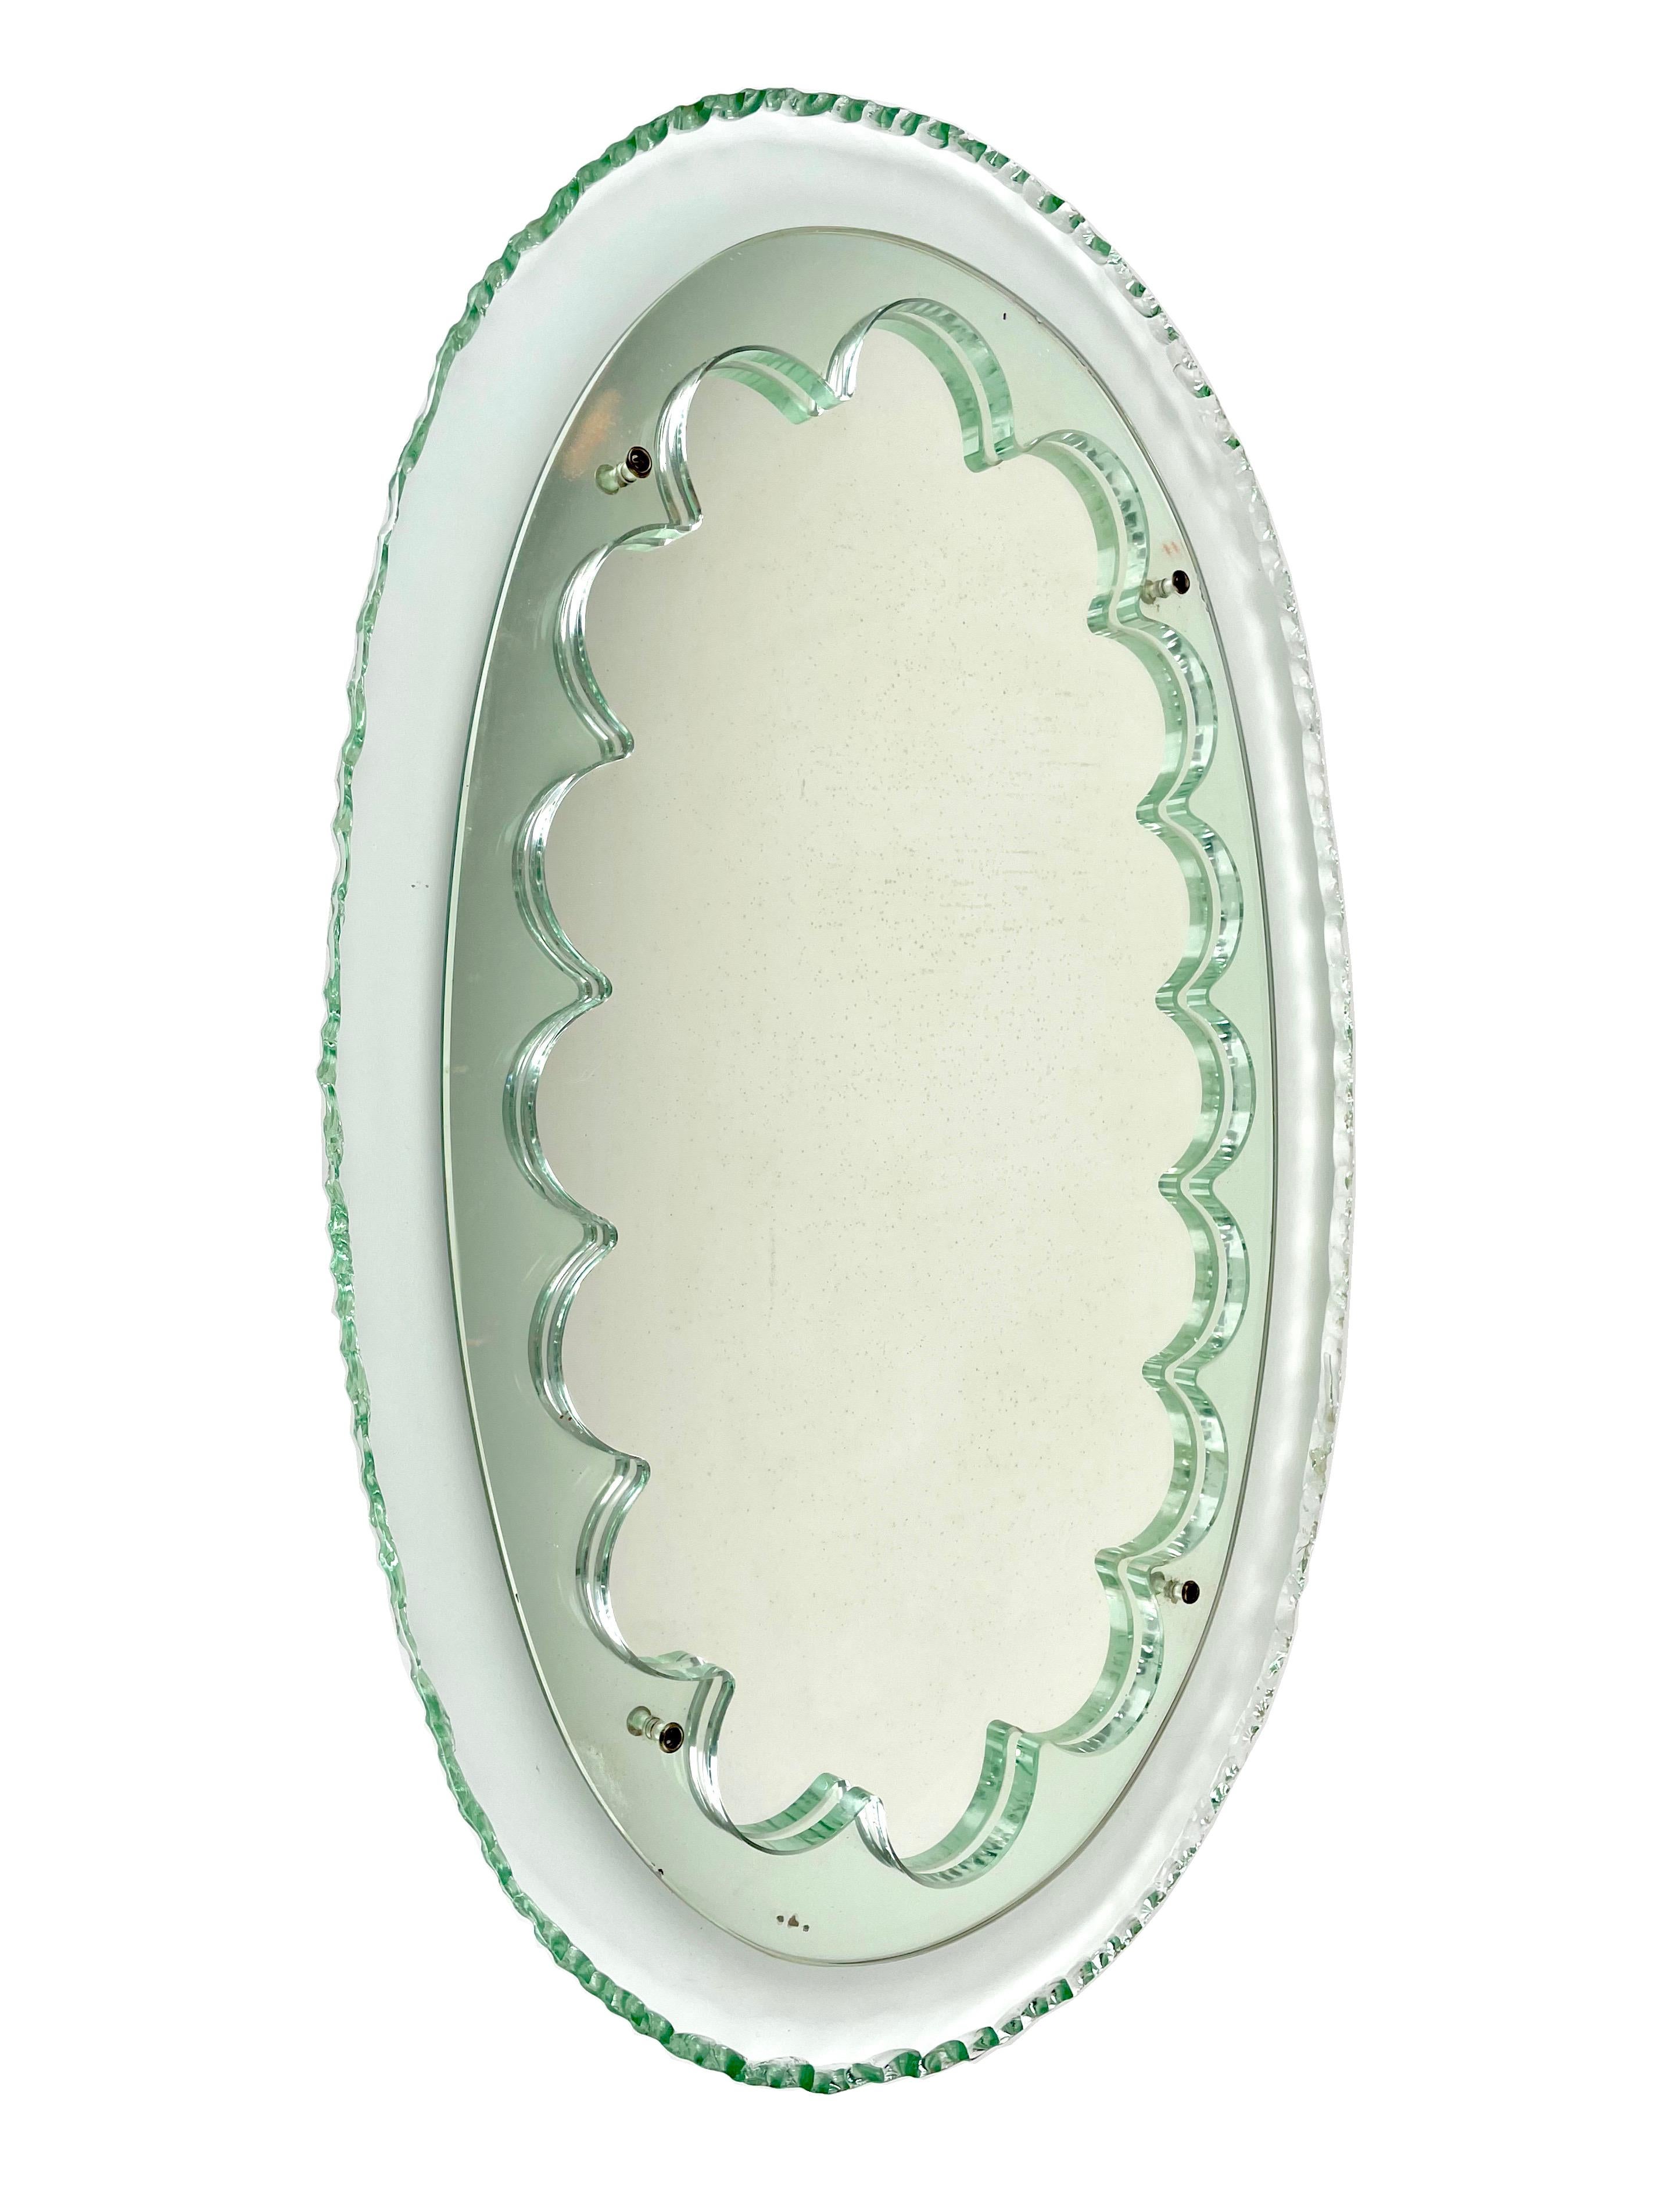 Rare miroir mural en verre vert dans le style de Max Ingrand pour Fontana Arte, Italie, années 1950. 

Forme ovale pour le cadre du verre avec décoration des bords ciselés. Au centre, miroir plat central d'origine serti dans des courbes de verre.